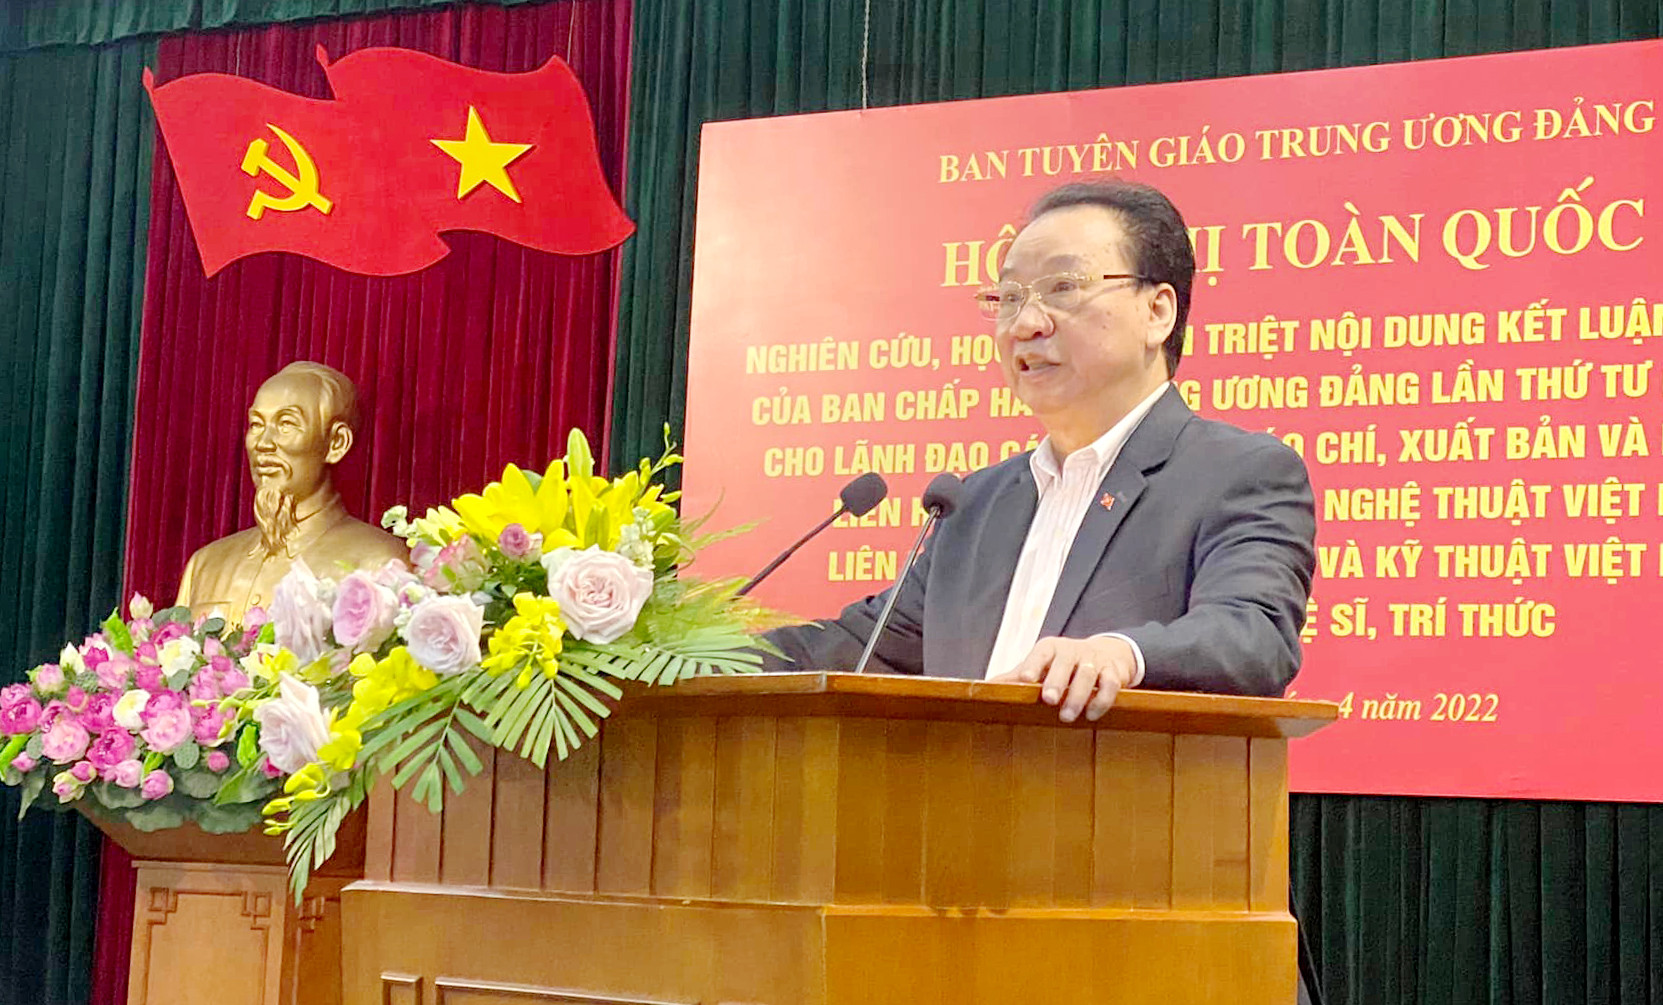 Đồng chí Phùng Hữu Phú truyền đạt các chuyên đề tại hội nghị. Ảnh SM